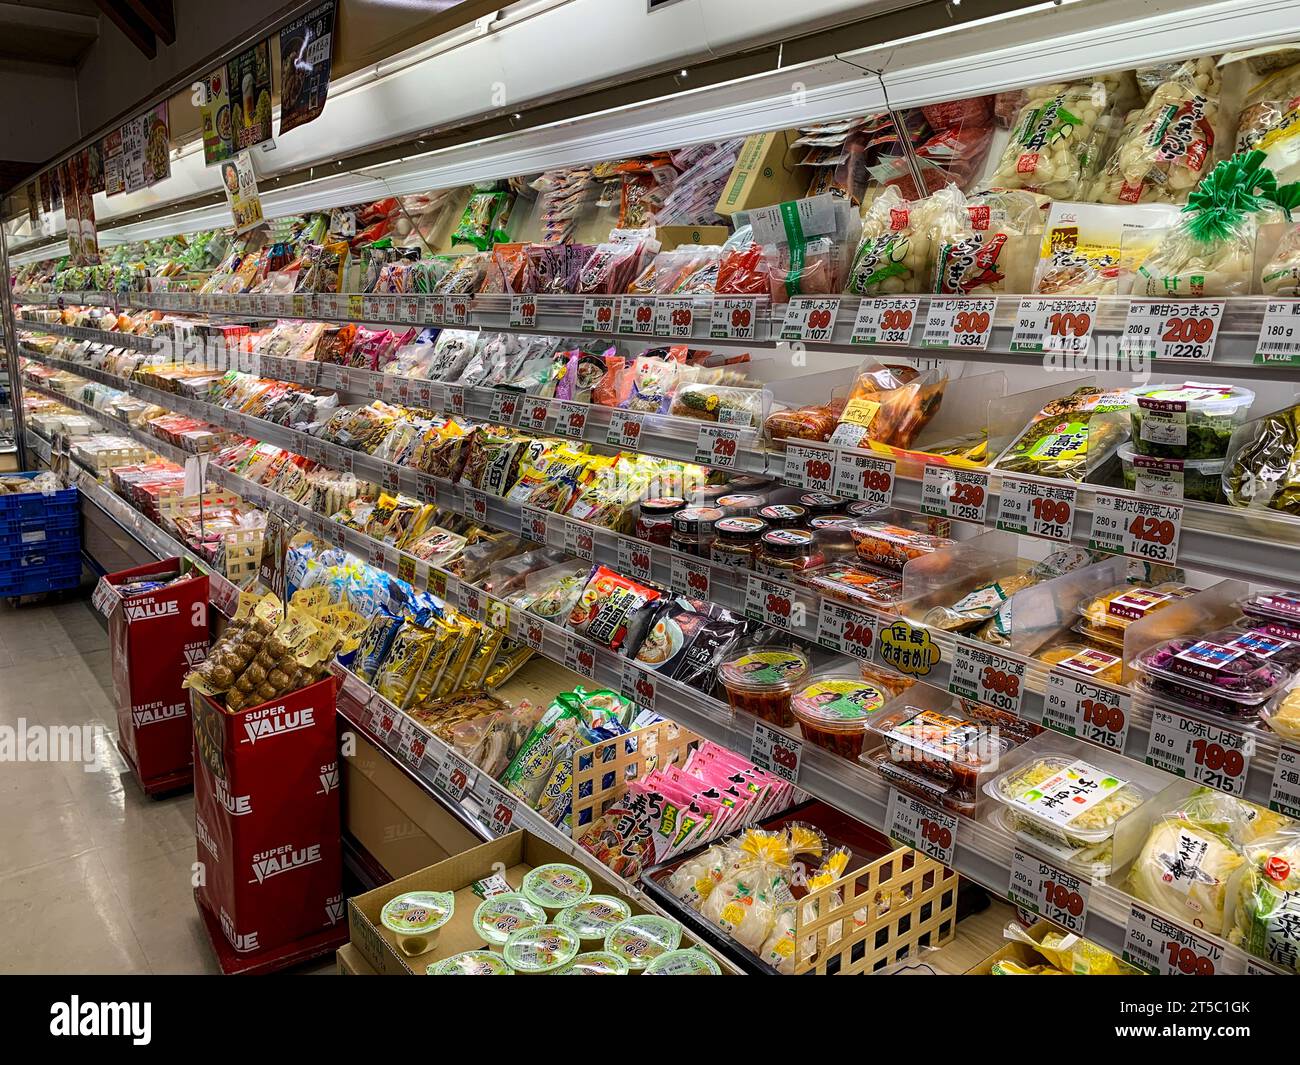 Giappone, Kyushu, IMI. Piccolo negozio di alimentari, spuntini e cibo di prima necessità. Foto Stock